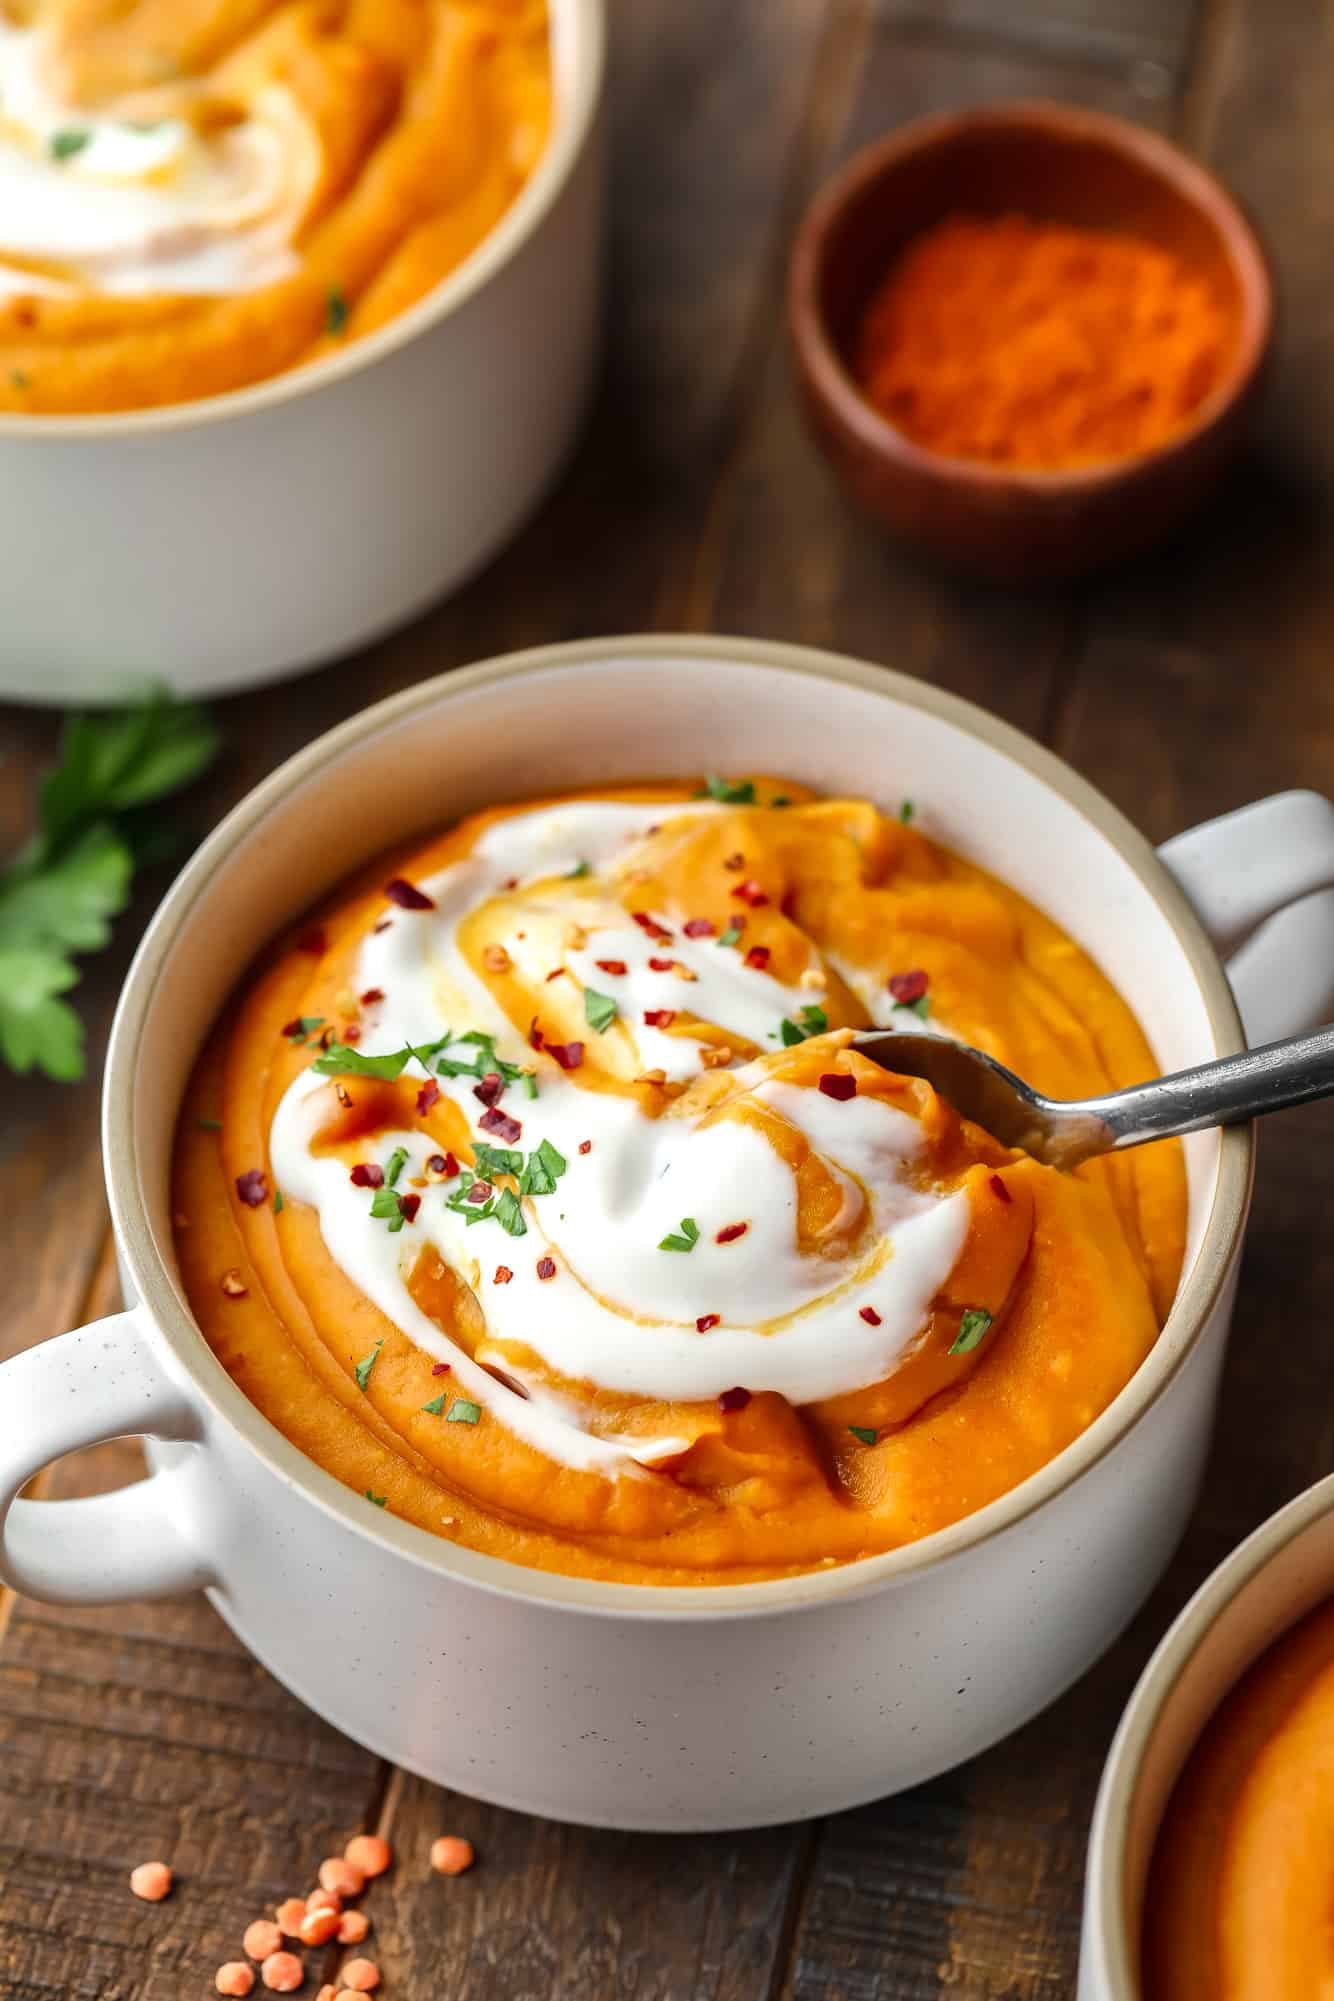 Nehmen Sie mit einem Metalllöffel eine Kugel Karotten-Linsen-Suppe aus einer weißen Suppenschüssel.